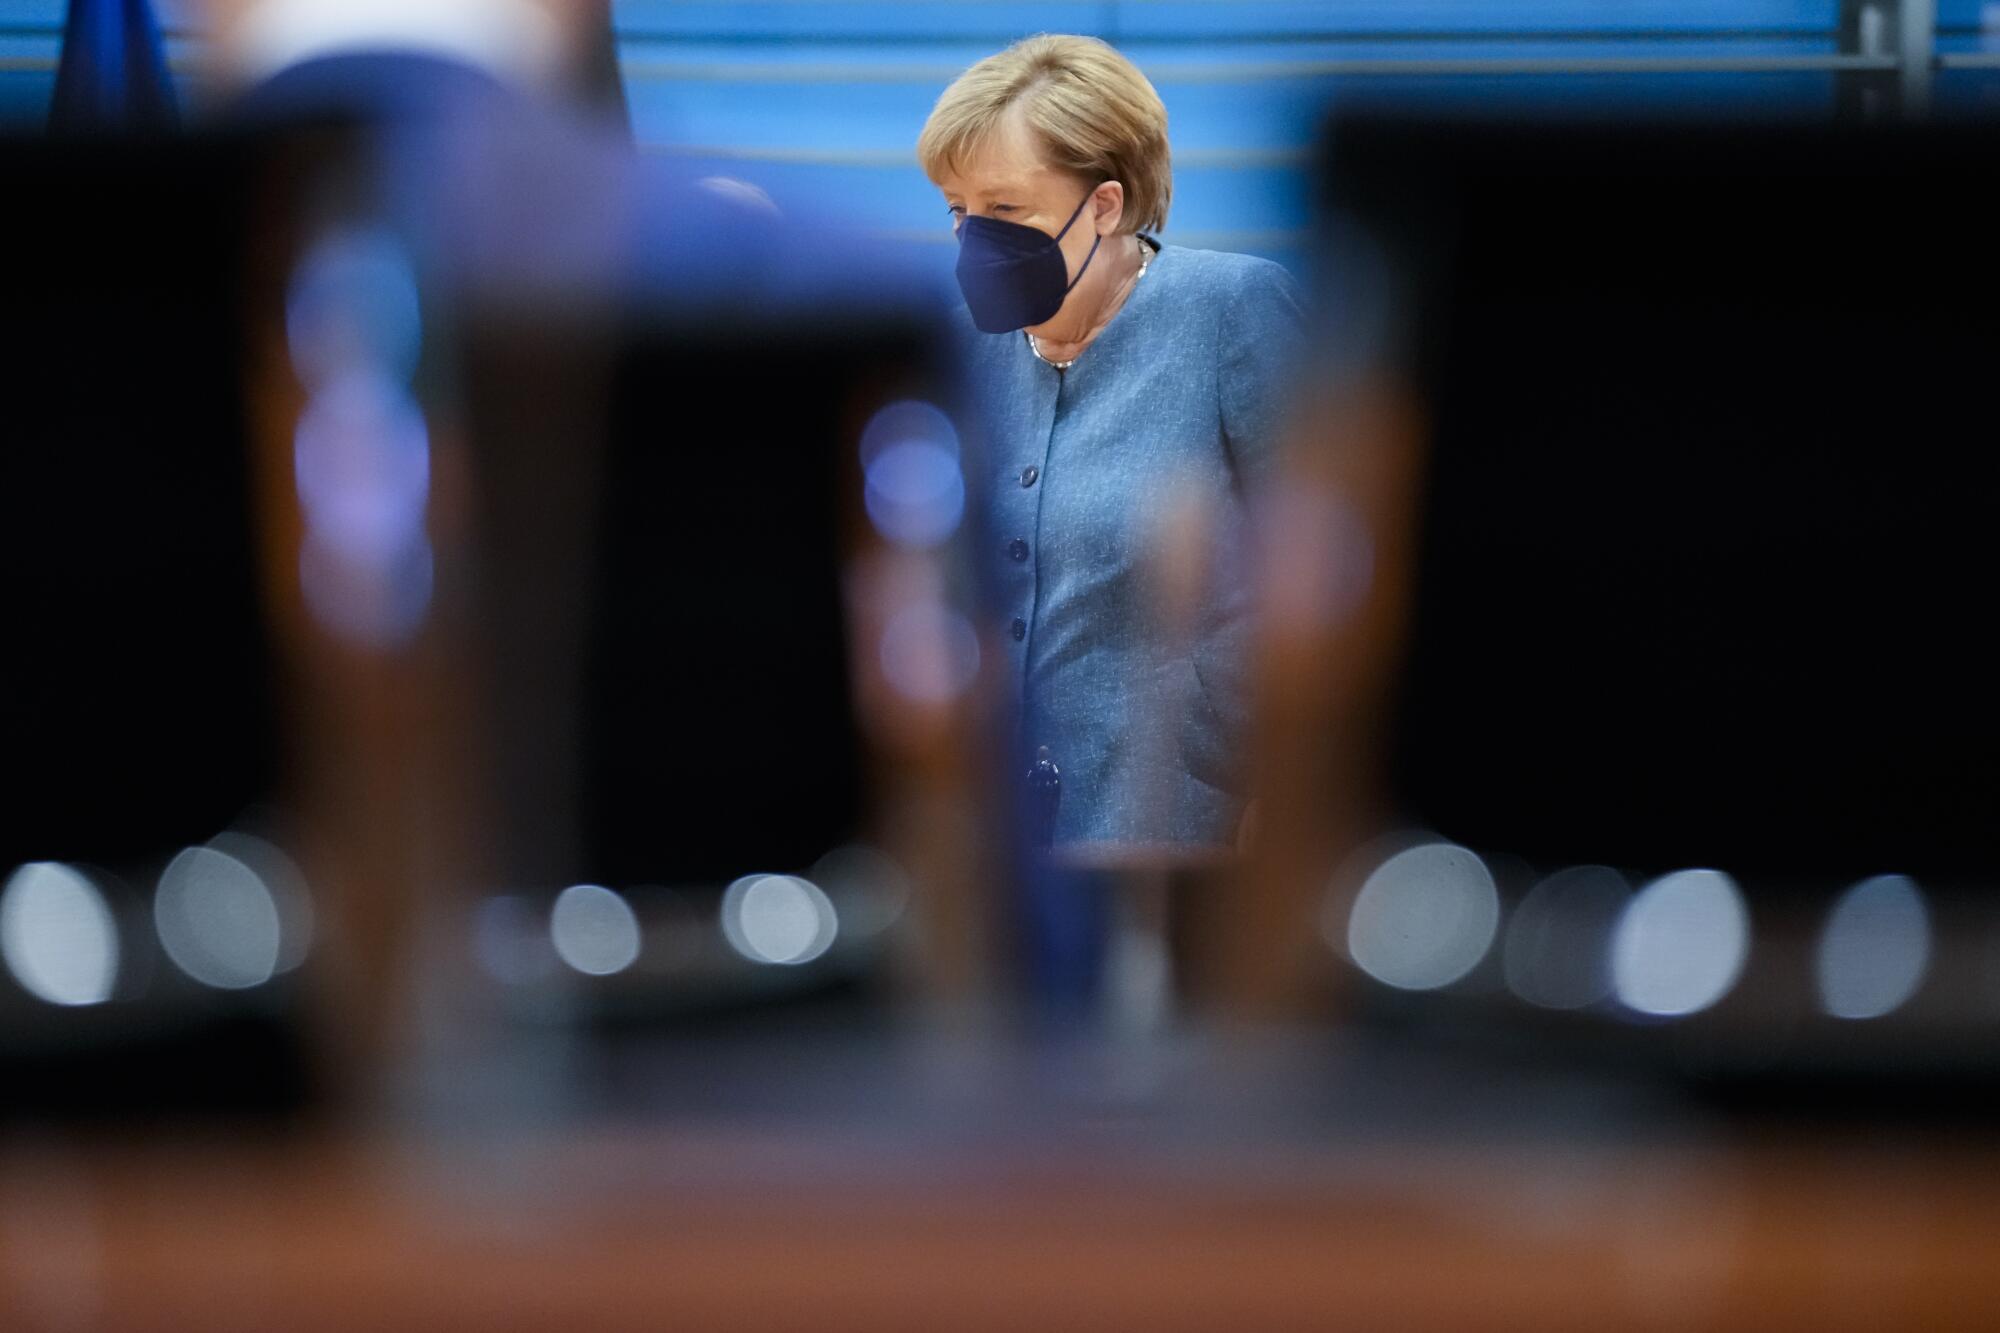 Angela Merkel, wearing a light blue jacket and dark mask, is seen through a gap between a man and a chair